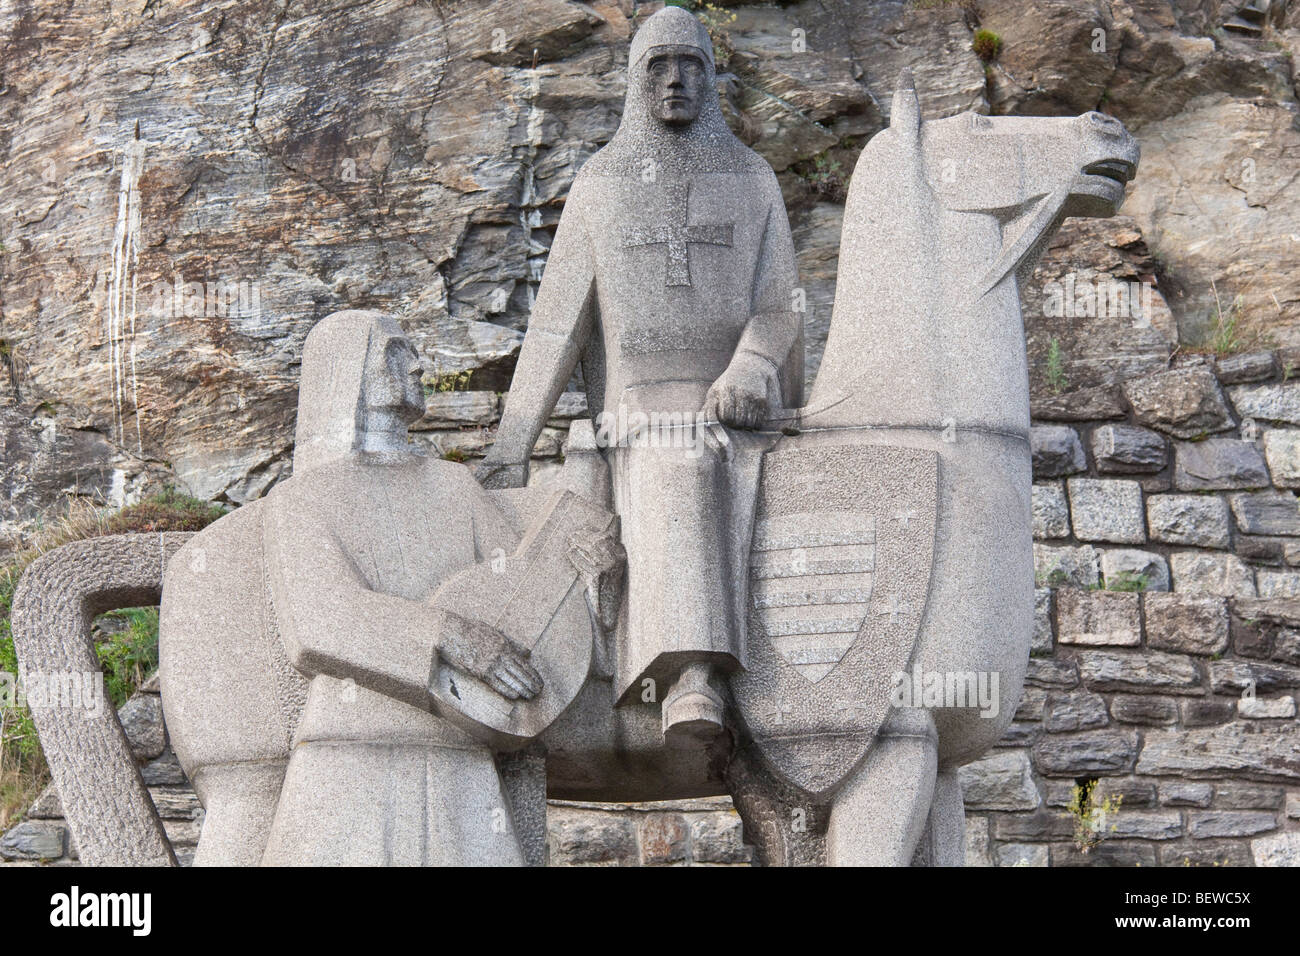 Sculpture de Richard Lionheart et Blondel de Nesle près de Dürnstein, Autriche Banque D'Images